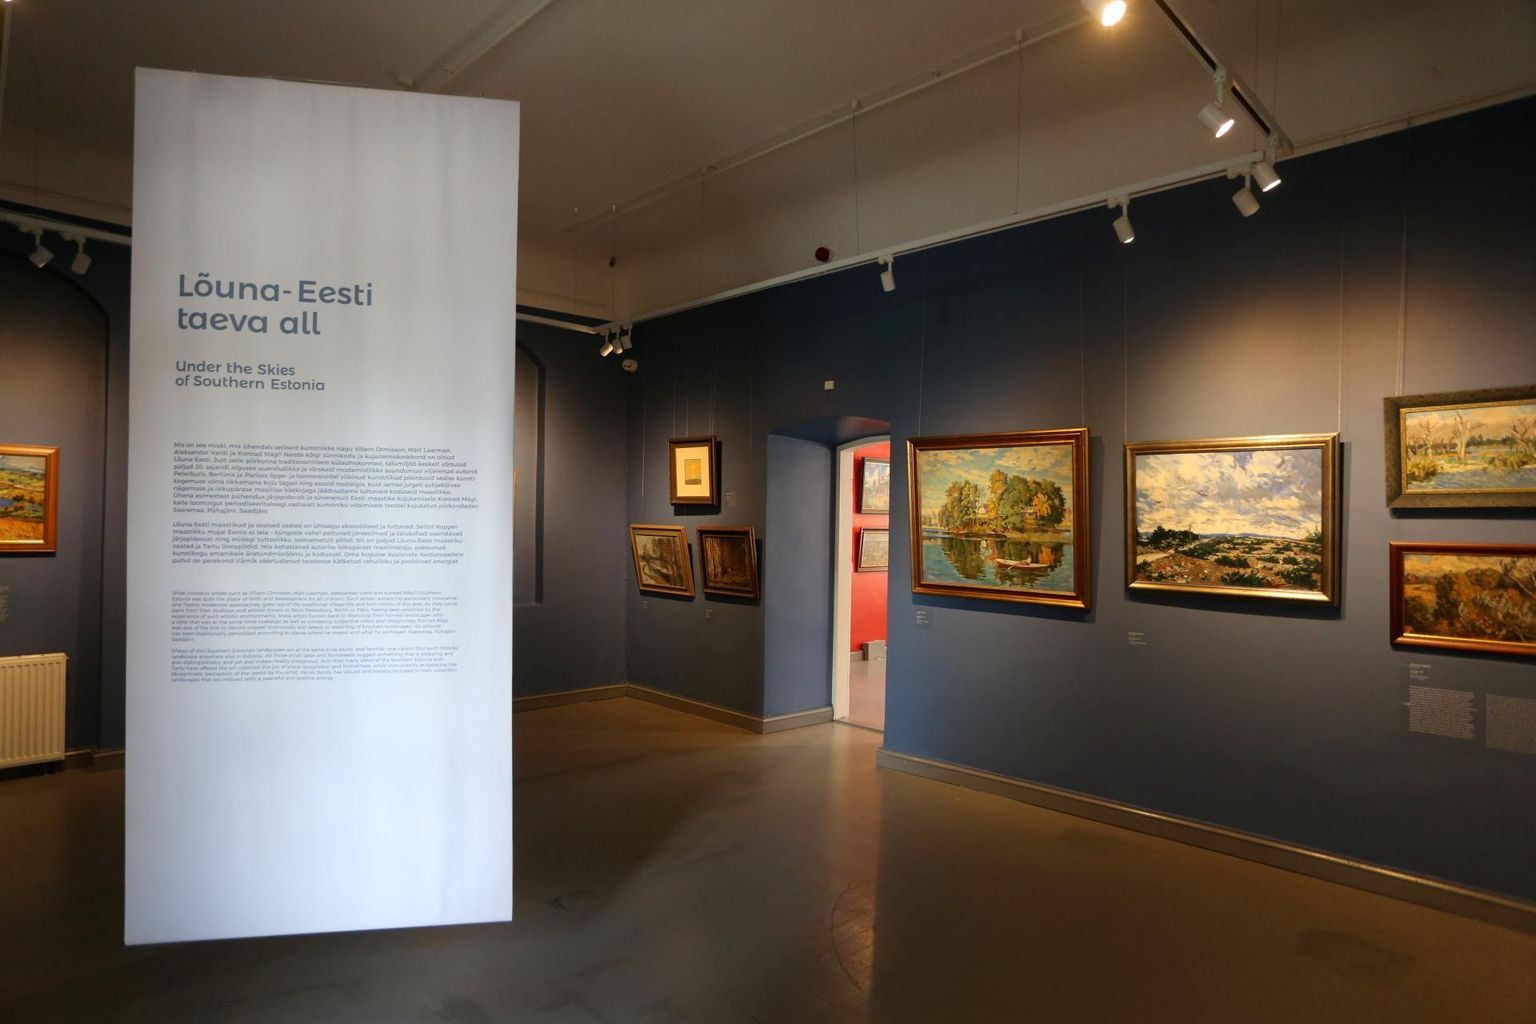 Värniku pere kunstikogu näitusel Tartu linnamuuseumis ripub laest selgitavaid tekste.